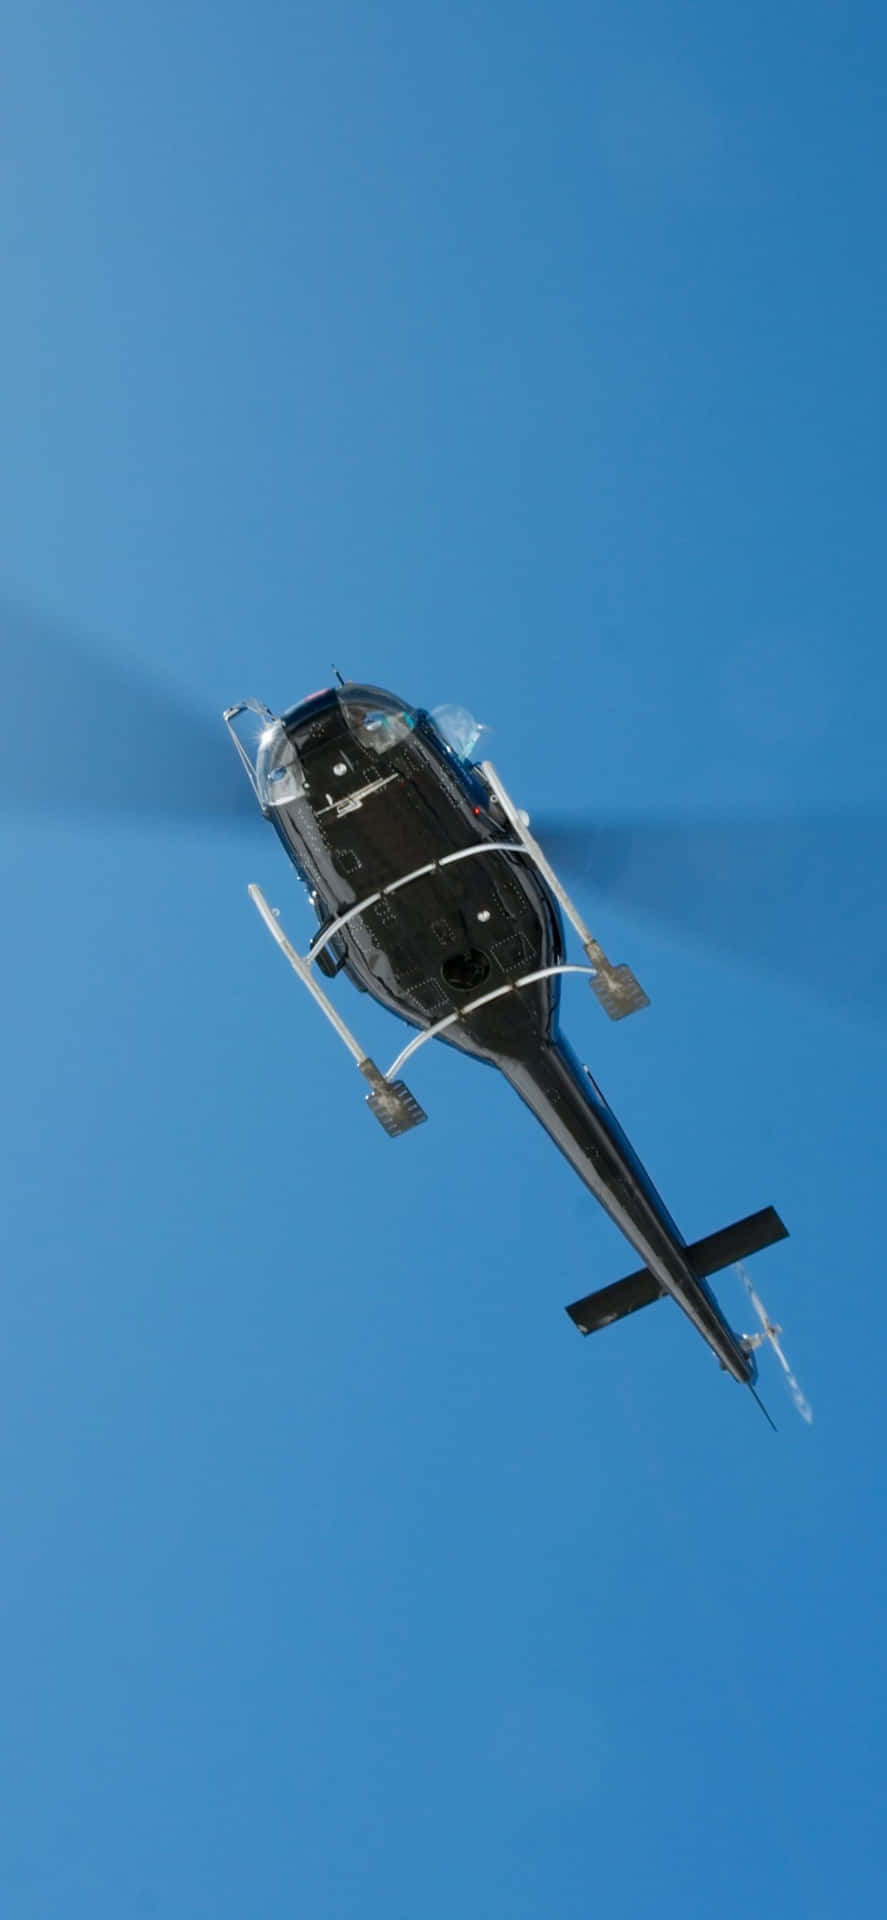 Nyd dusinvis af uovertrufne udsigter af himlen på en Iphone Xs Max Helicopter!